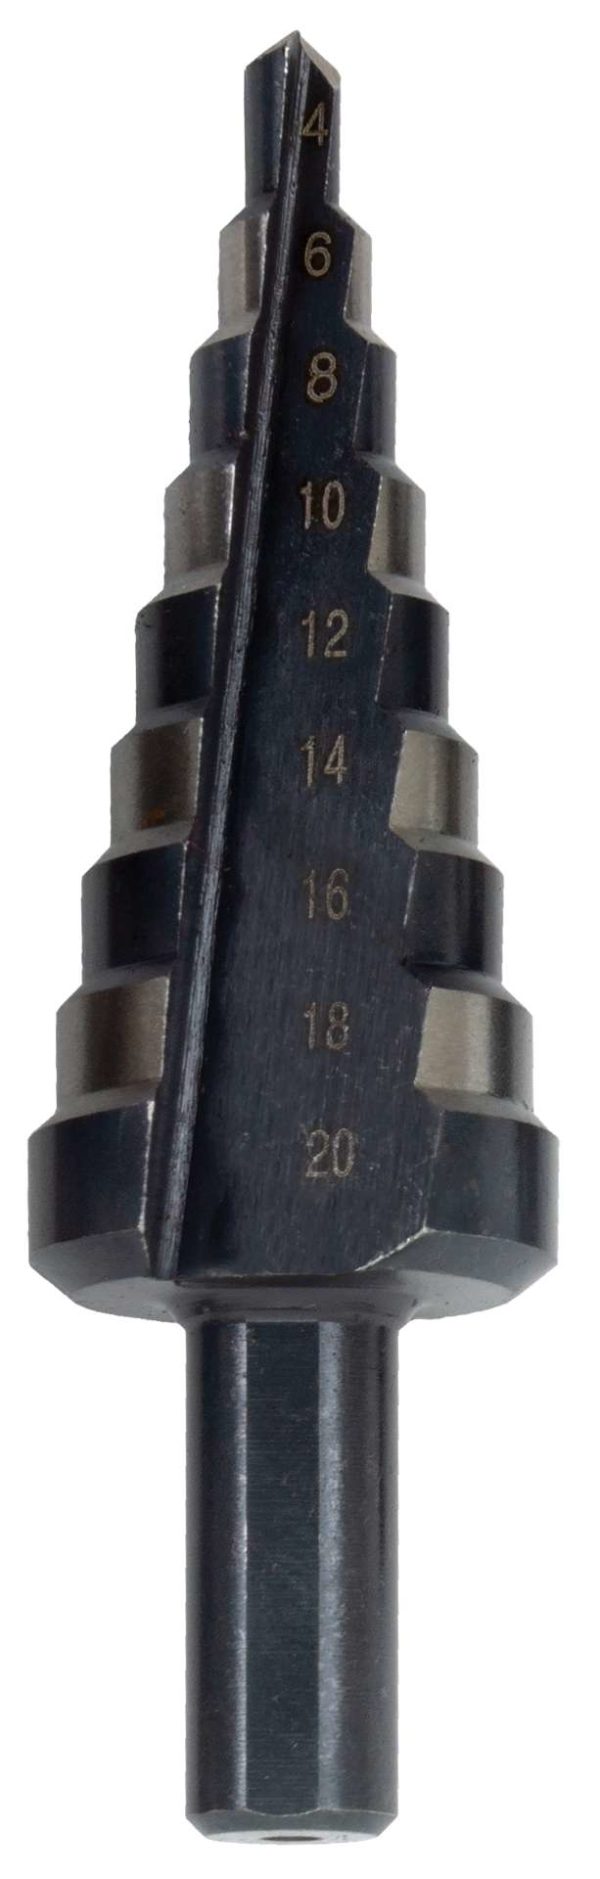 Welzh Werkzeug Cone Twisters Step Drill Bit Set 3-Piece, 4-32mm